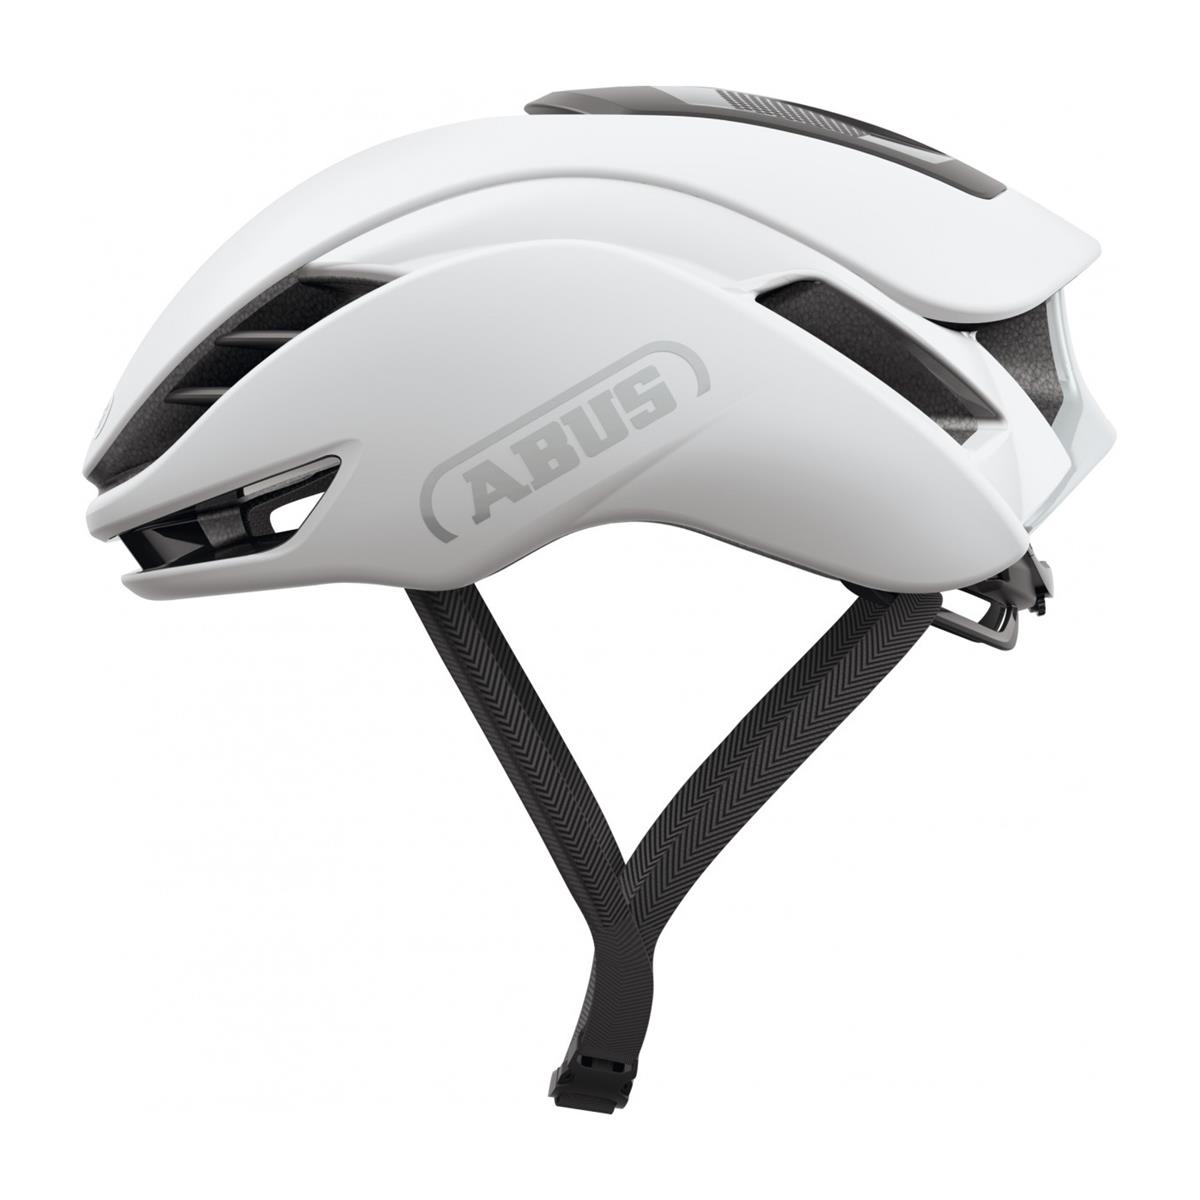 Gamechanger 2.0 Helmet Polar White Size S (51-55cm)